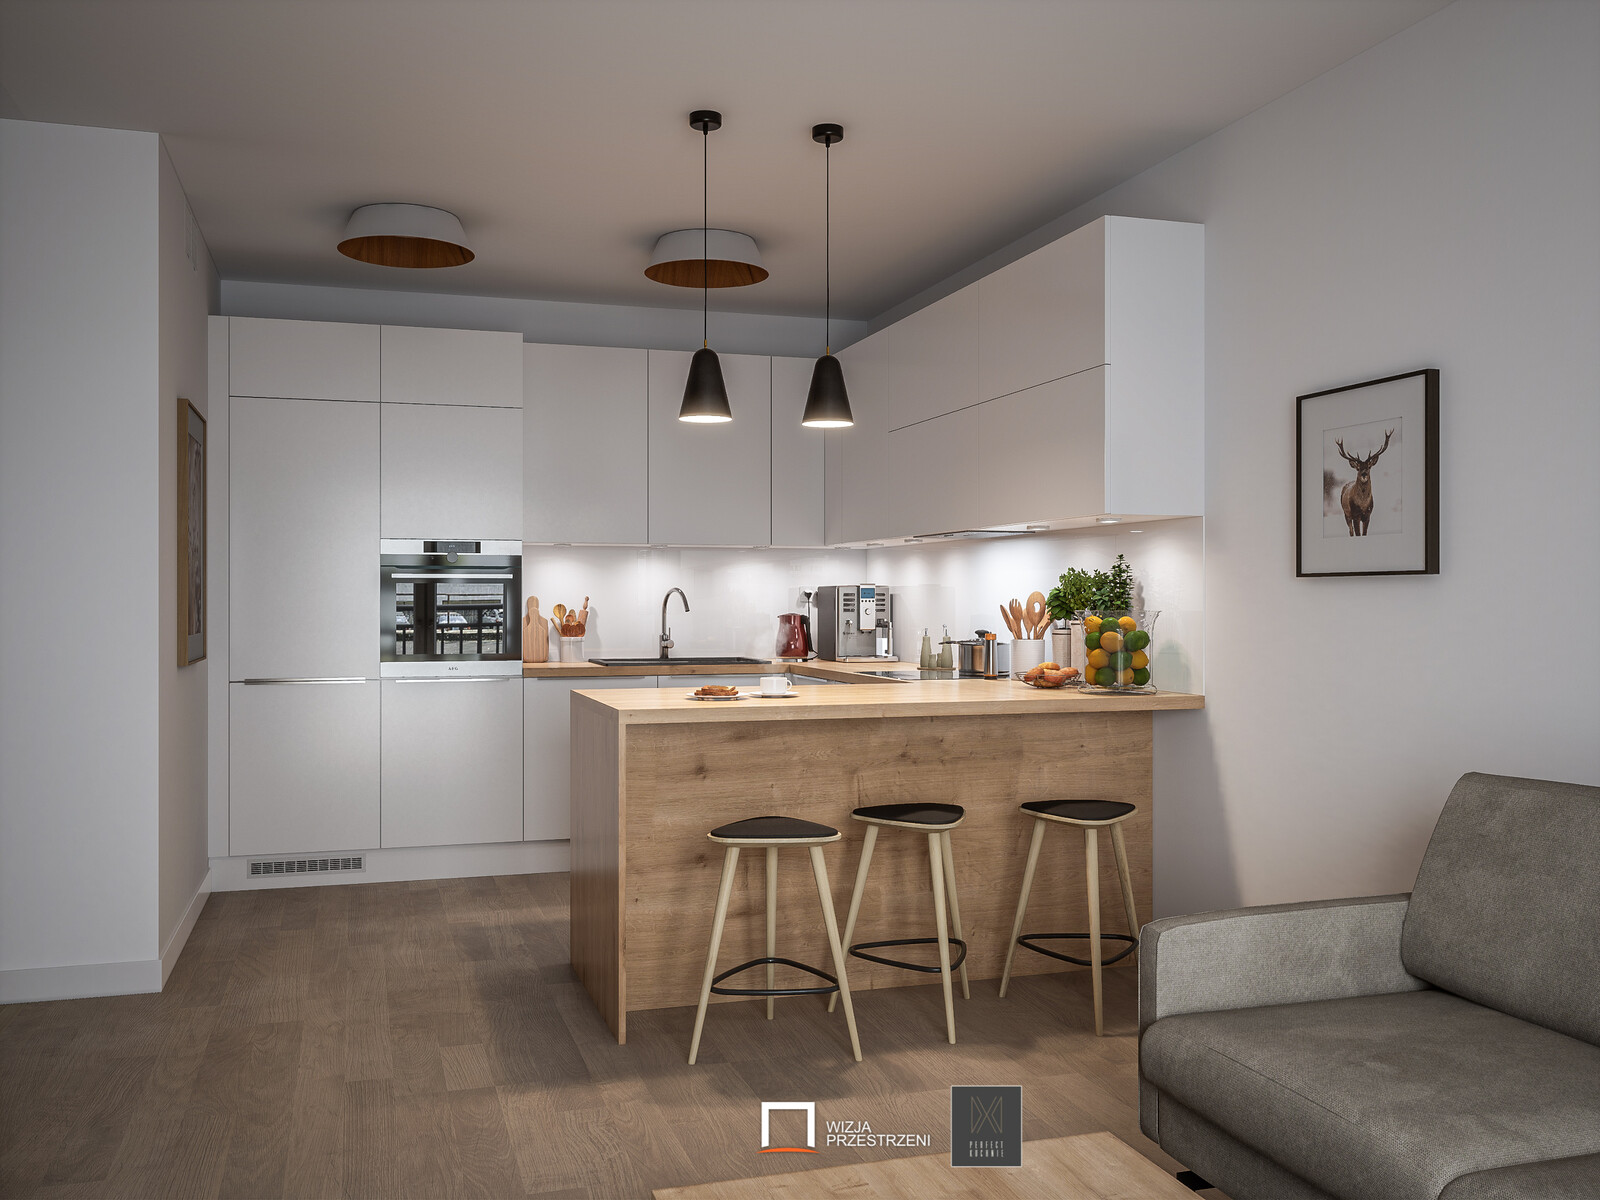 Kitchen Interior Archviz - Unreal Engine 4 / UE4 + RTX